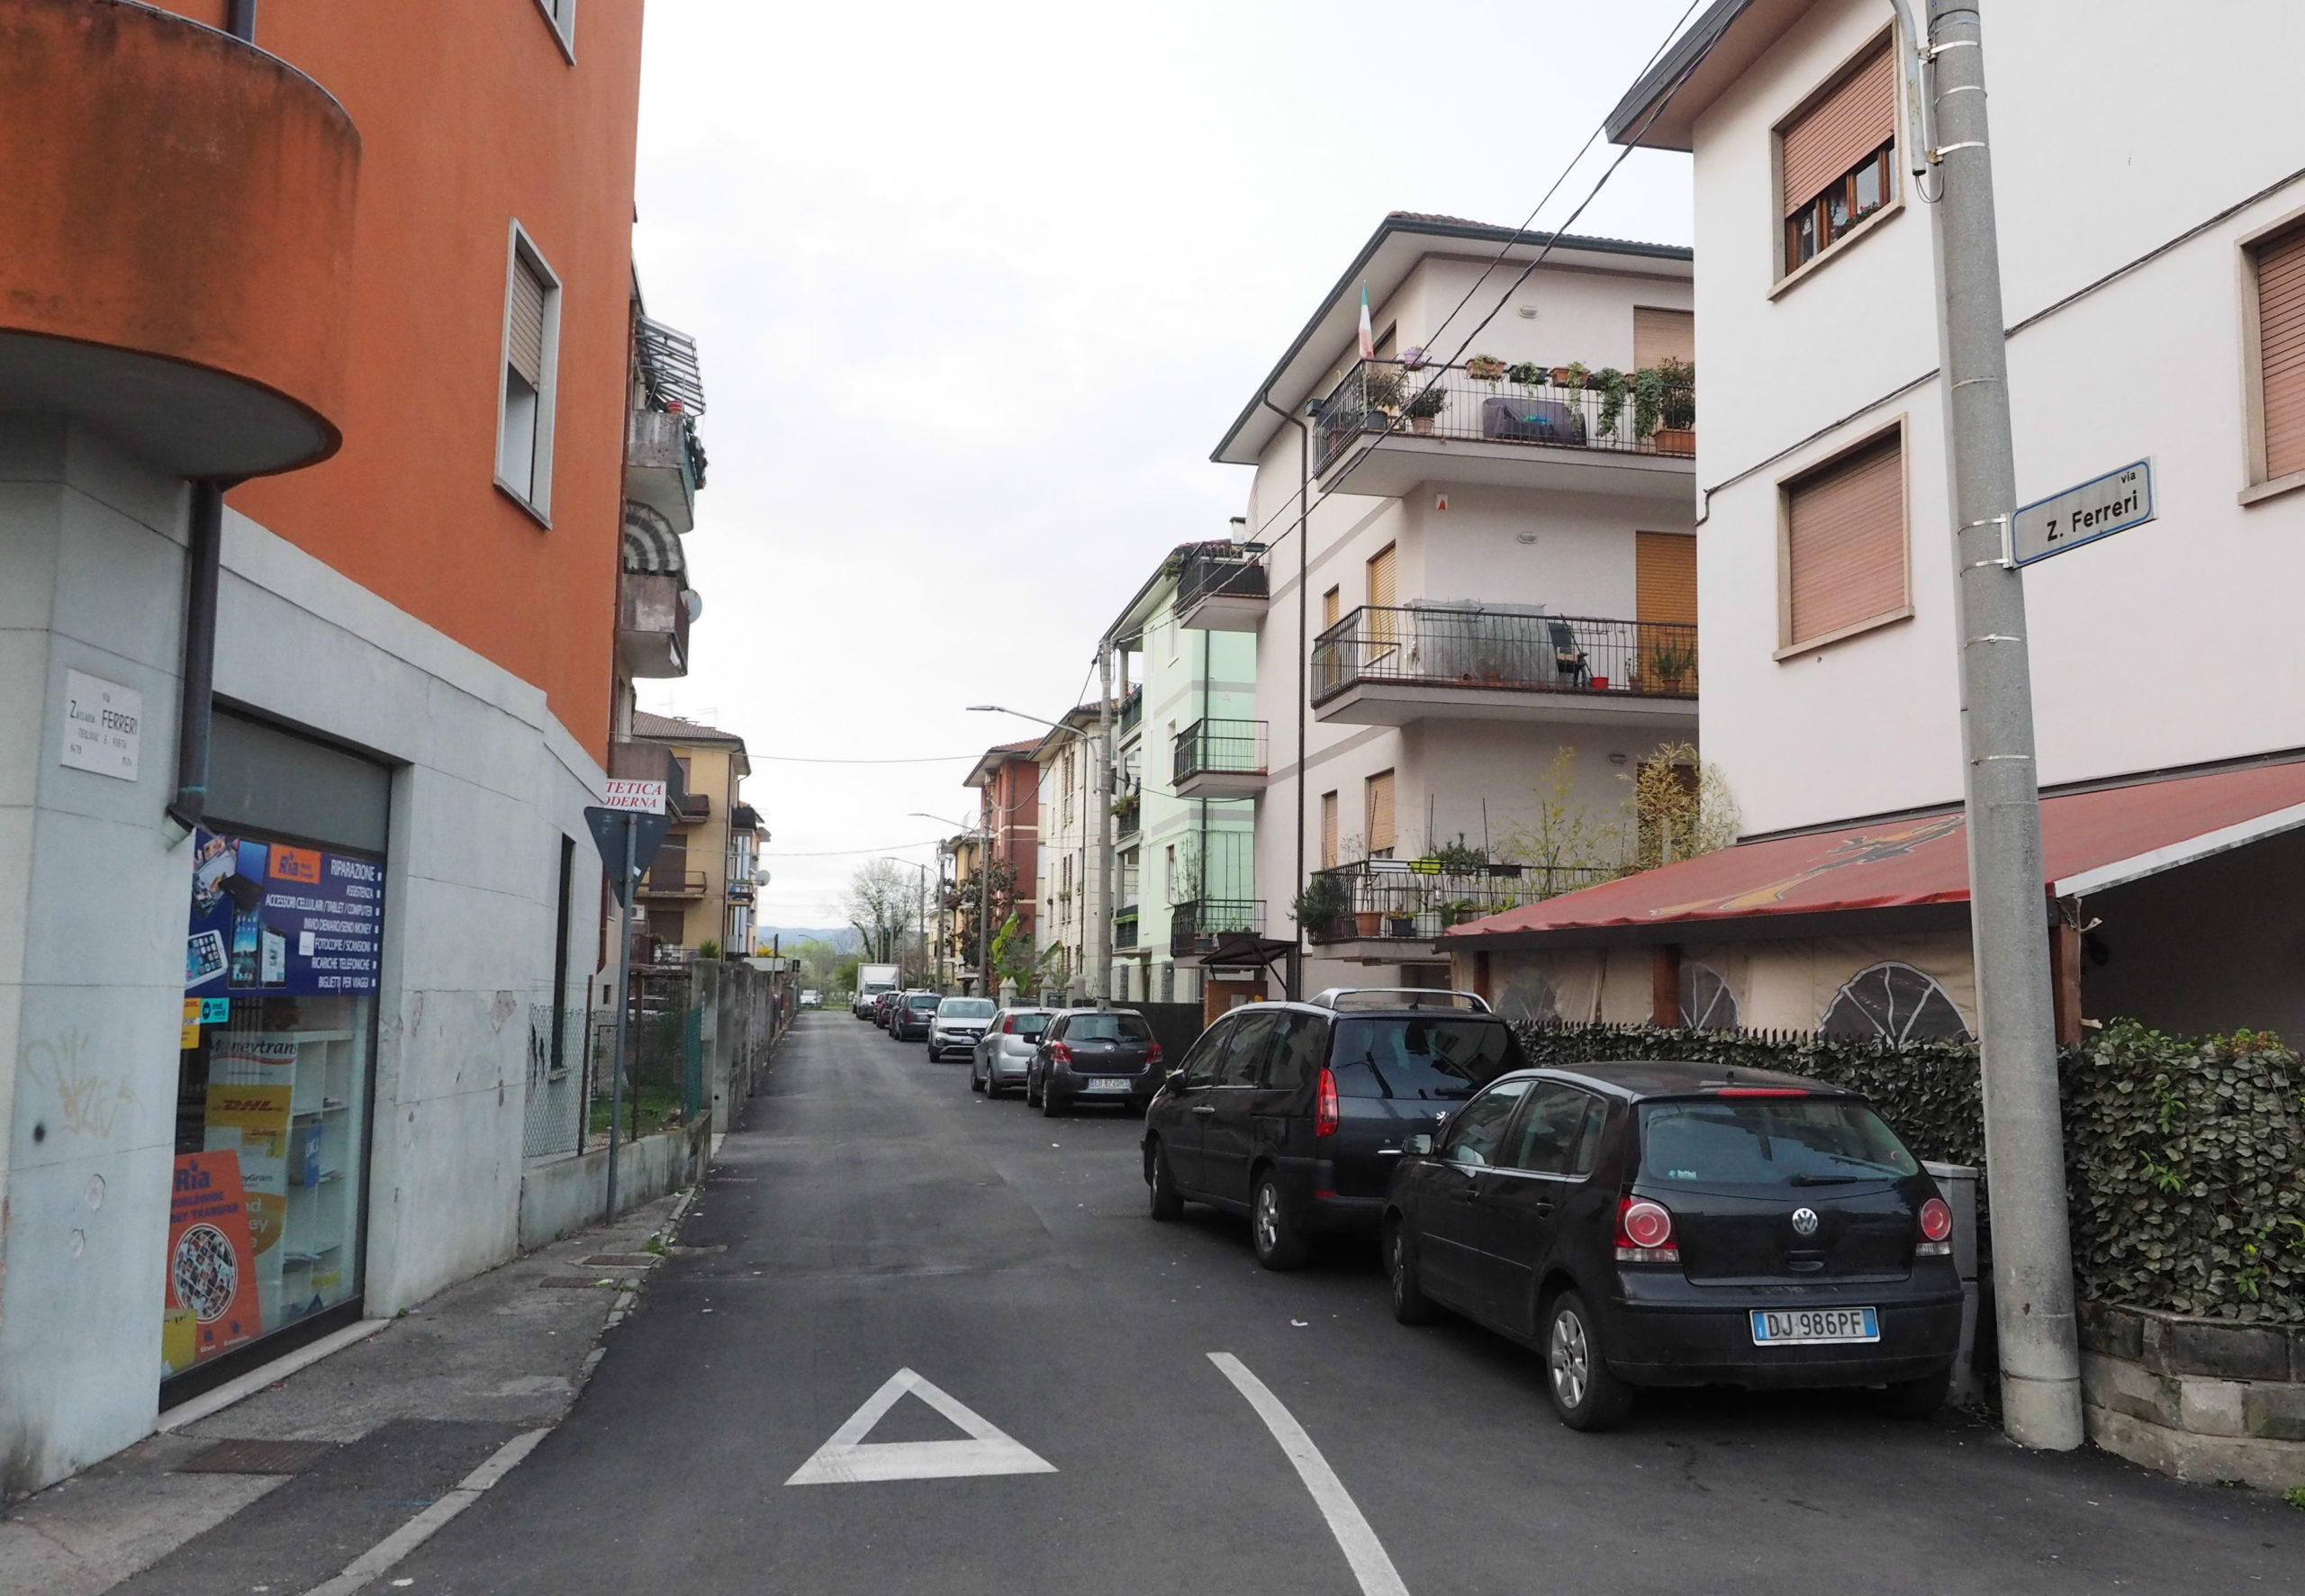 Via Zaccaria Ferreri (Vicenza-Francesco Dalla Pozza-Colorfoto per ViPiù)